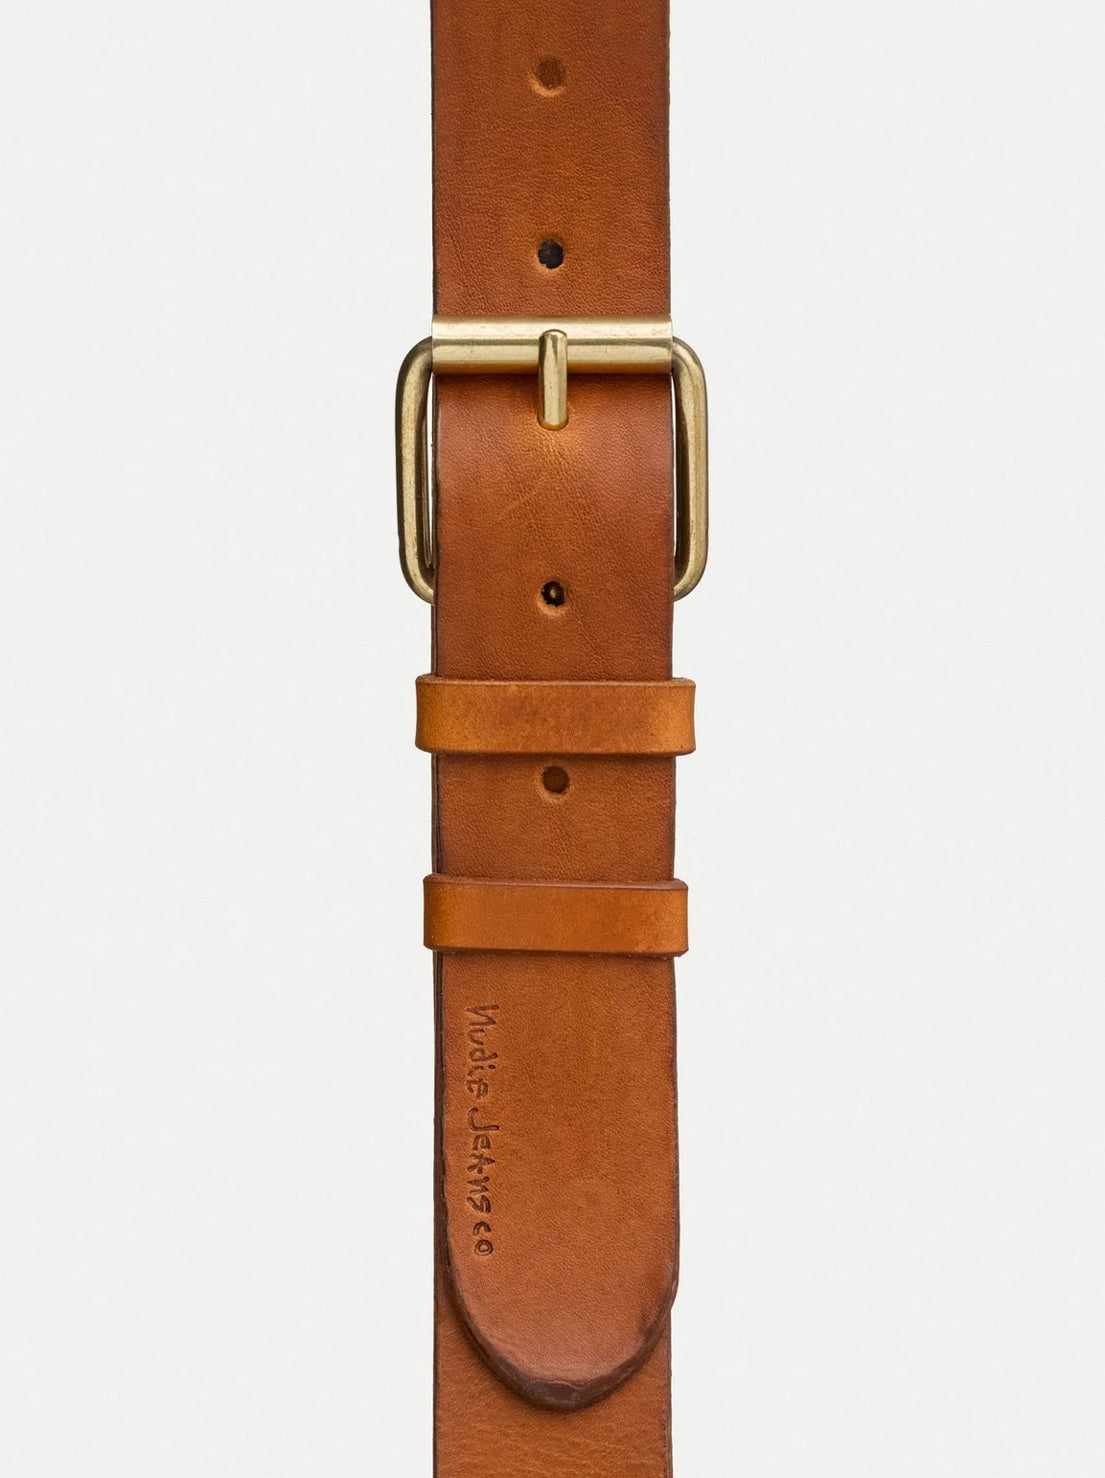 Nudie - Pedersson Leather Belt - Toffee Brown